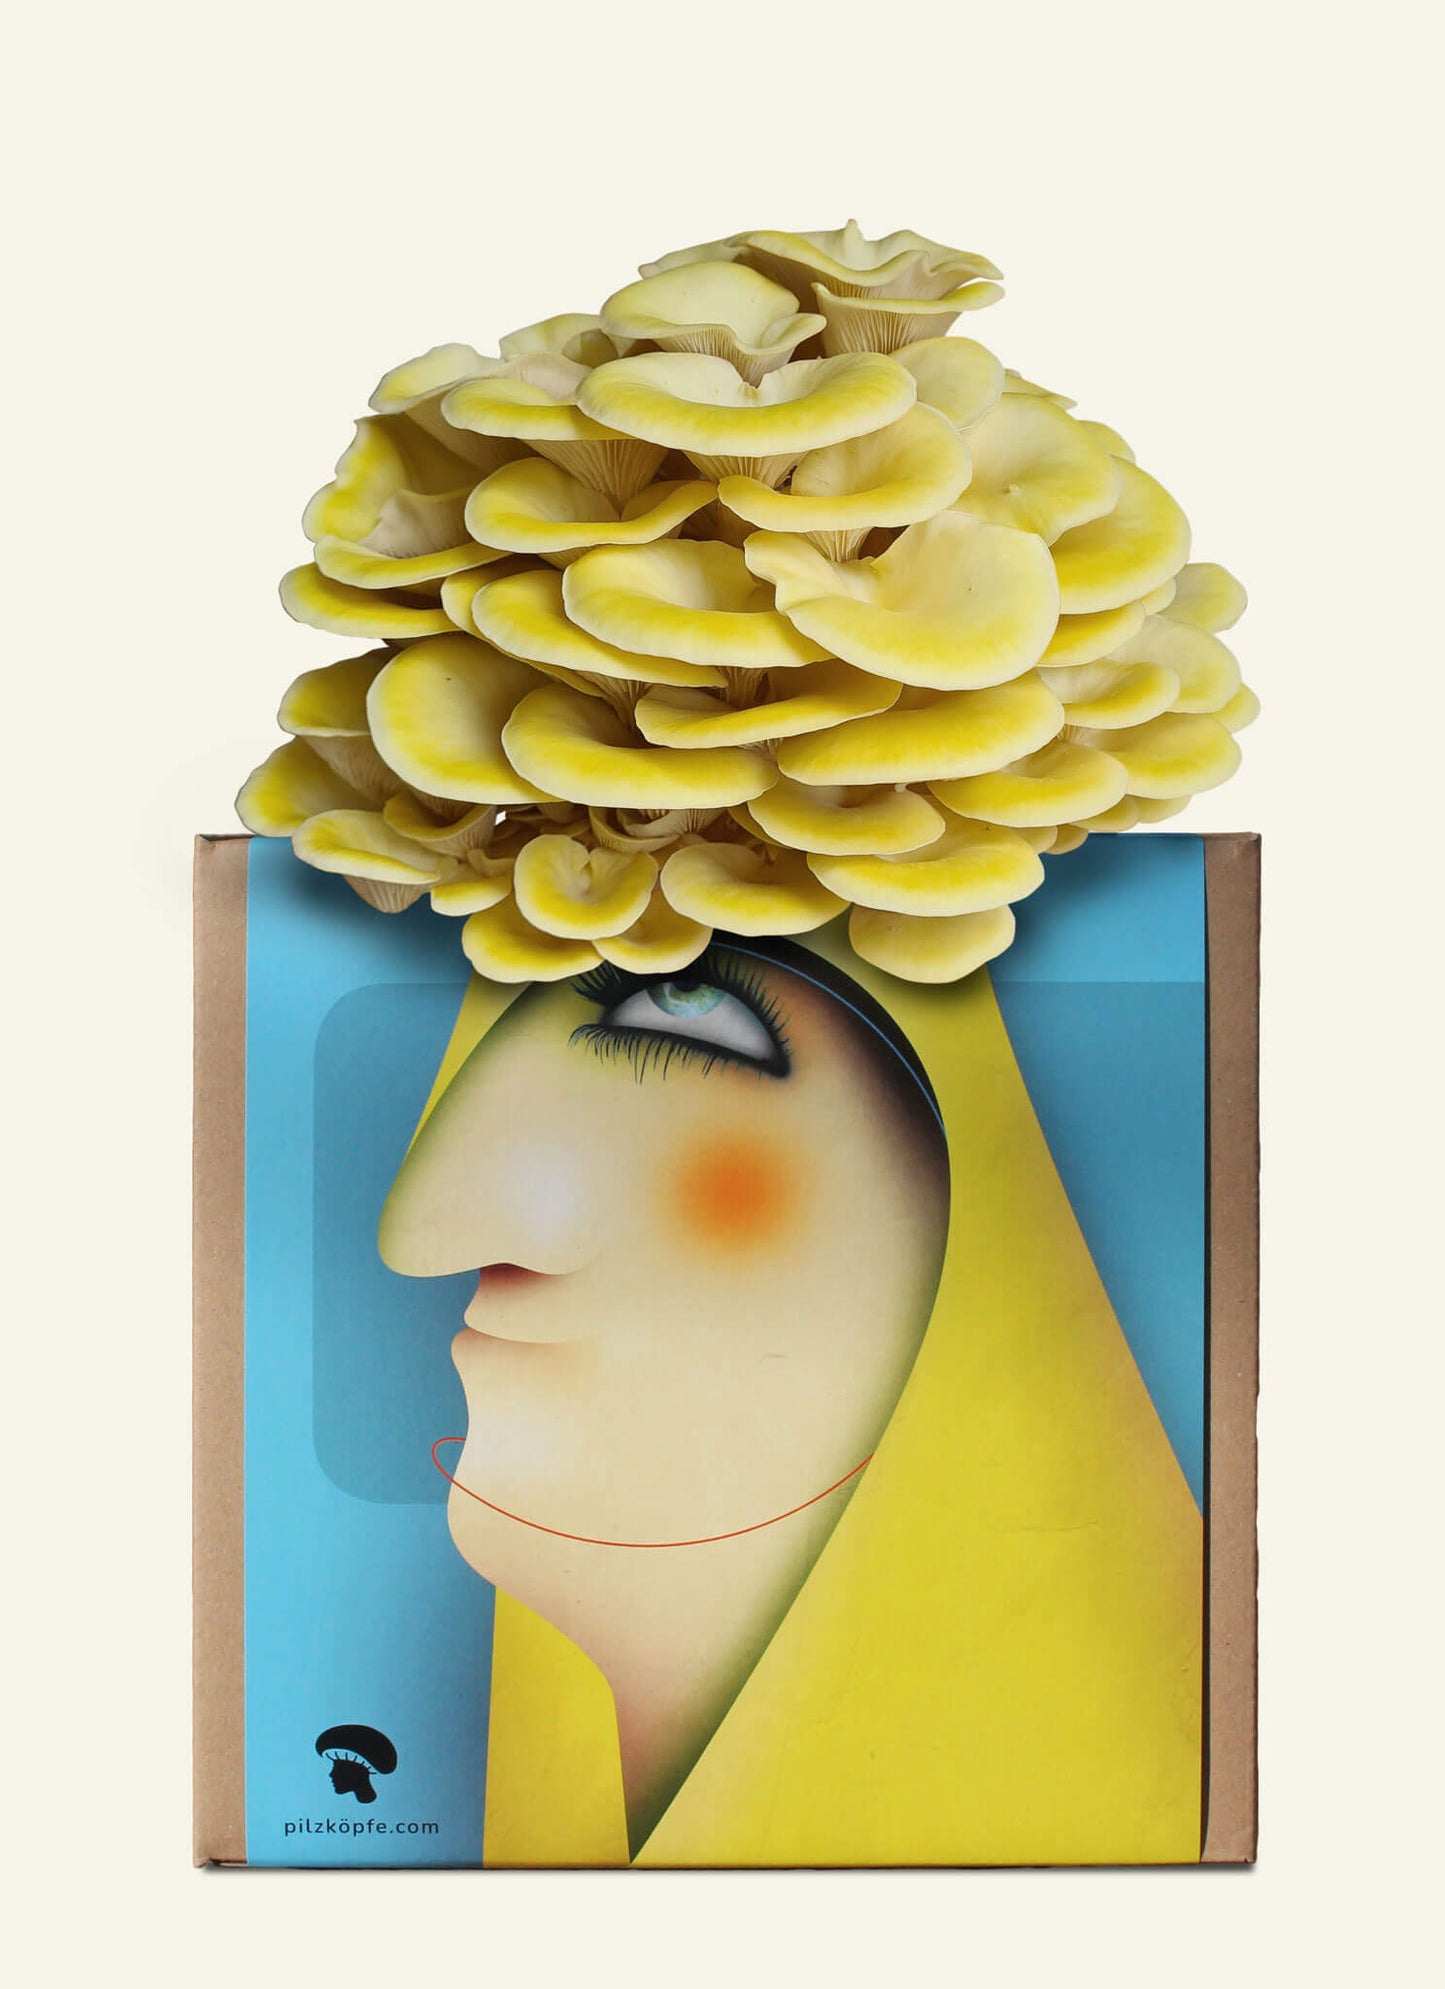 Pilzköpfe Zuchtset Limonenseitlinge Illustration mit Pilzfrisur